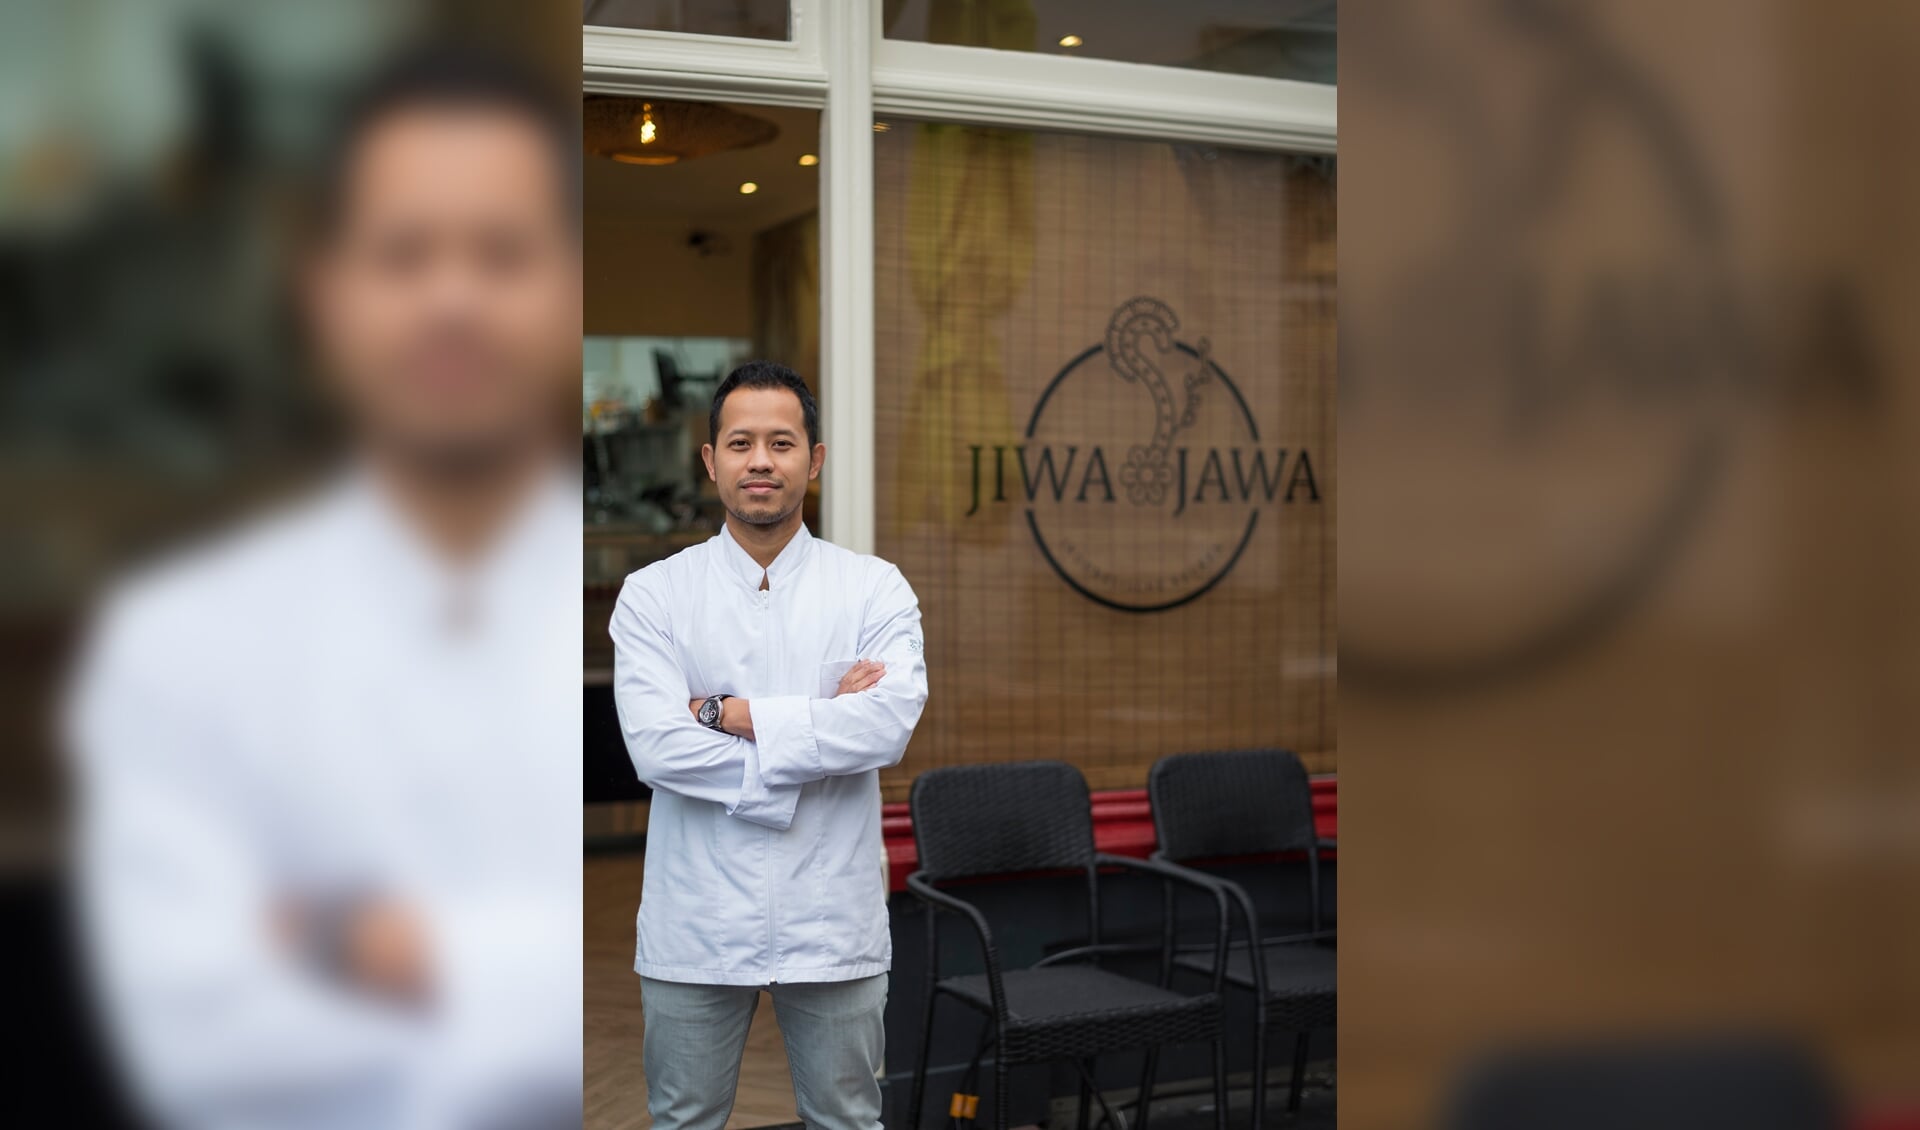 Chef Saiful staat voor de Nieuwe Indonesische afhaal Jiwa Jawa